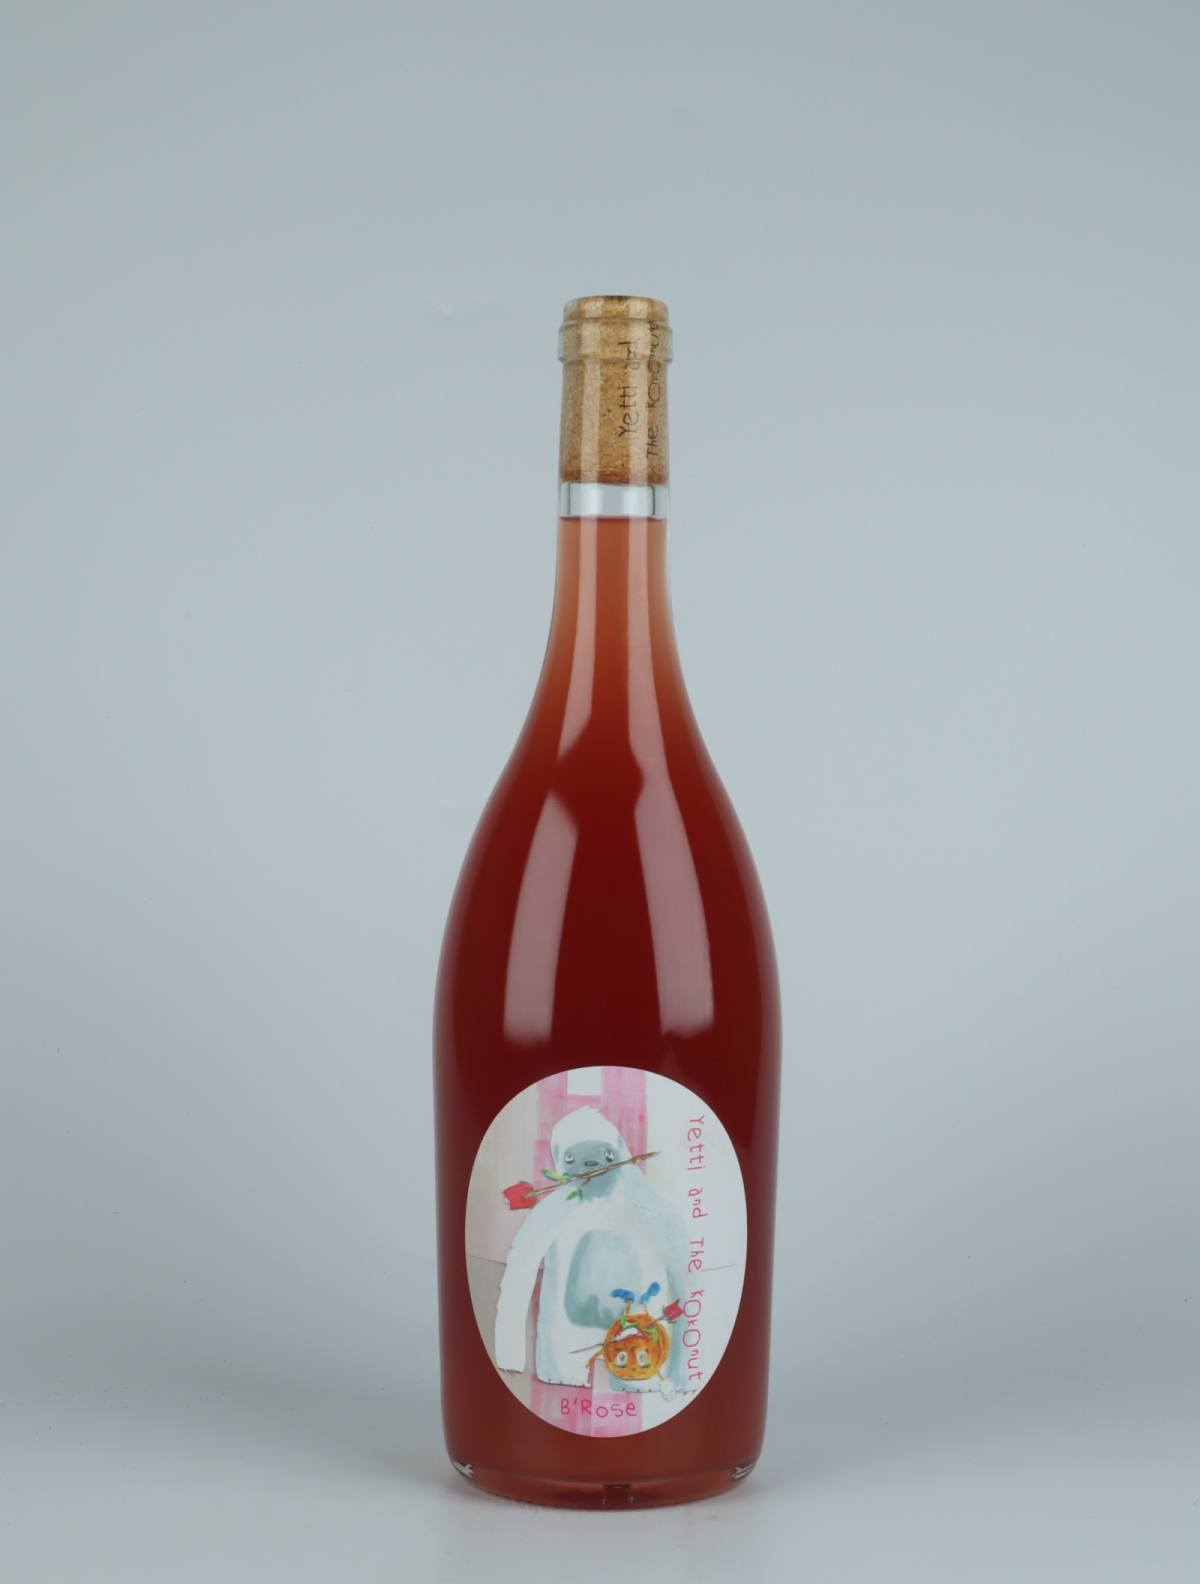 En flaske 2021 B'Rose Rosé fra Yetti and the Kokonut, Adelaide Hills i Australien